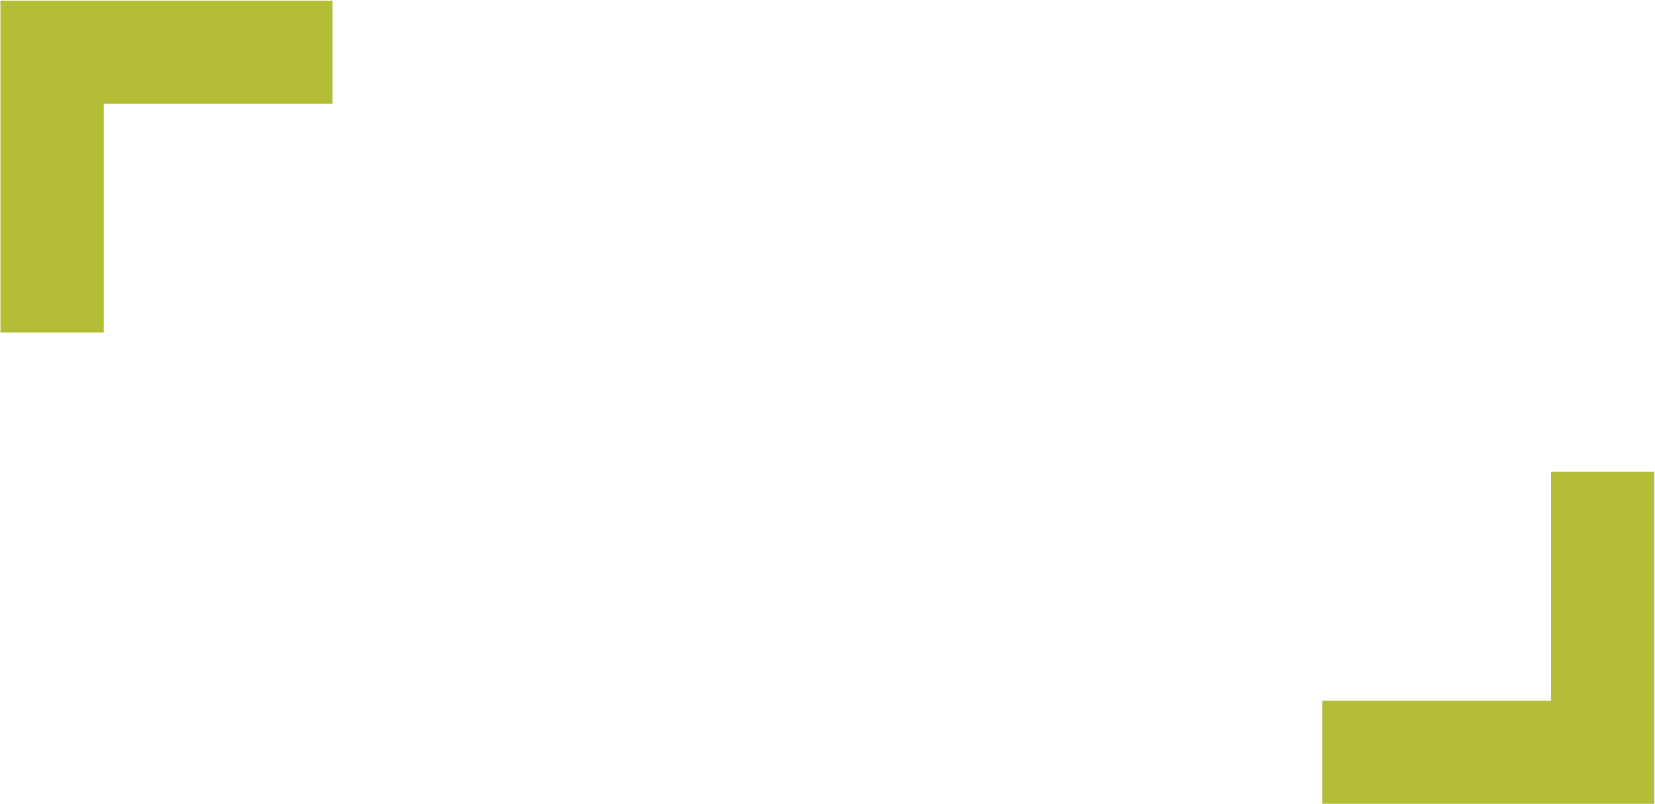 DBSI-Logo-2019-Light